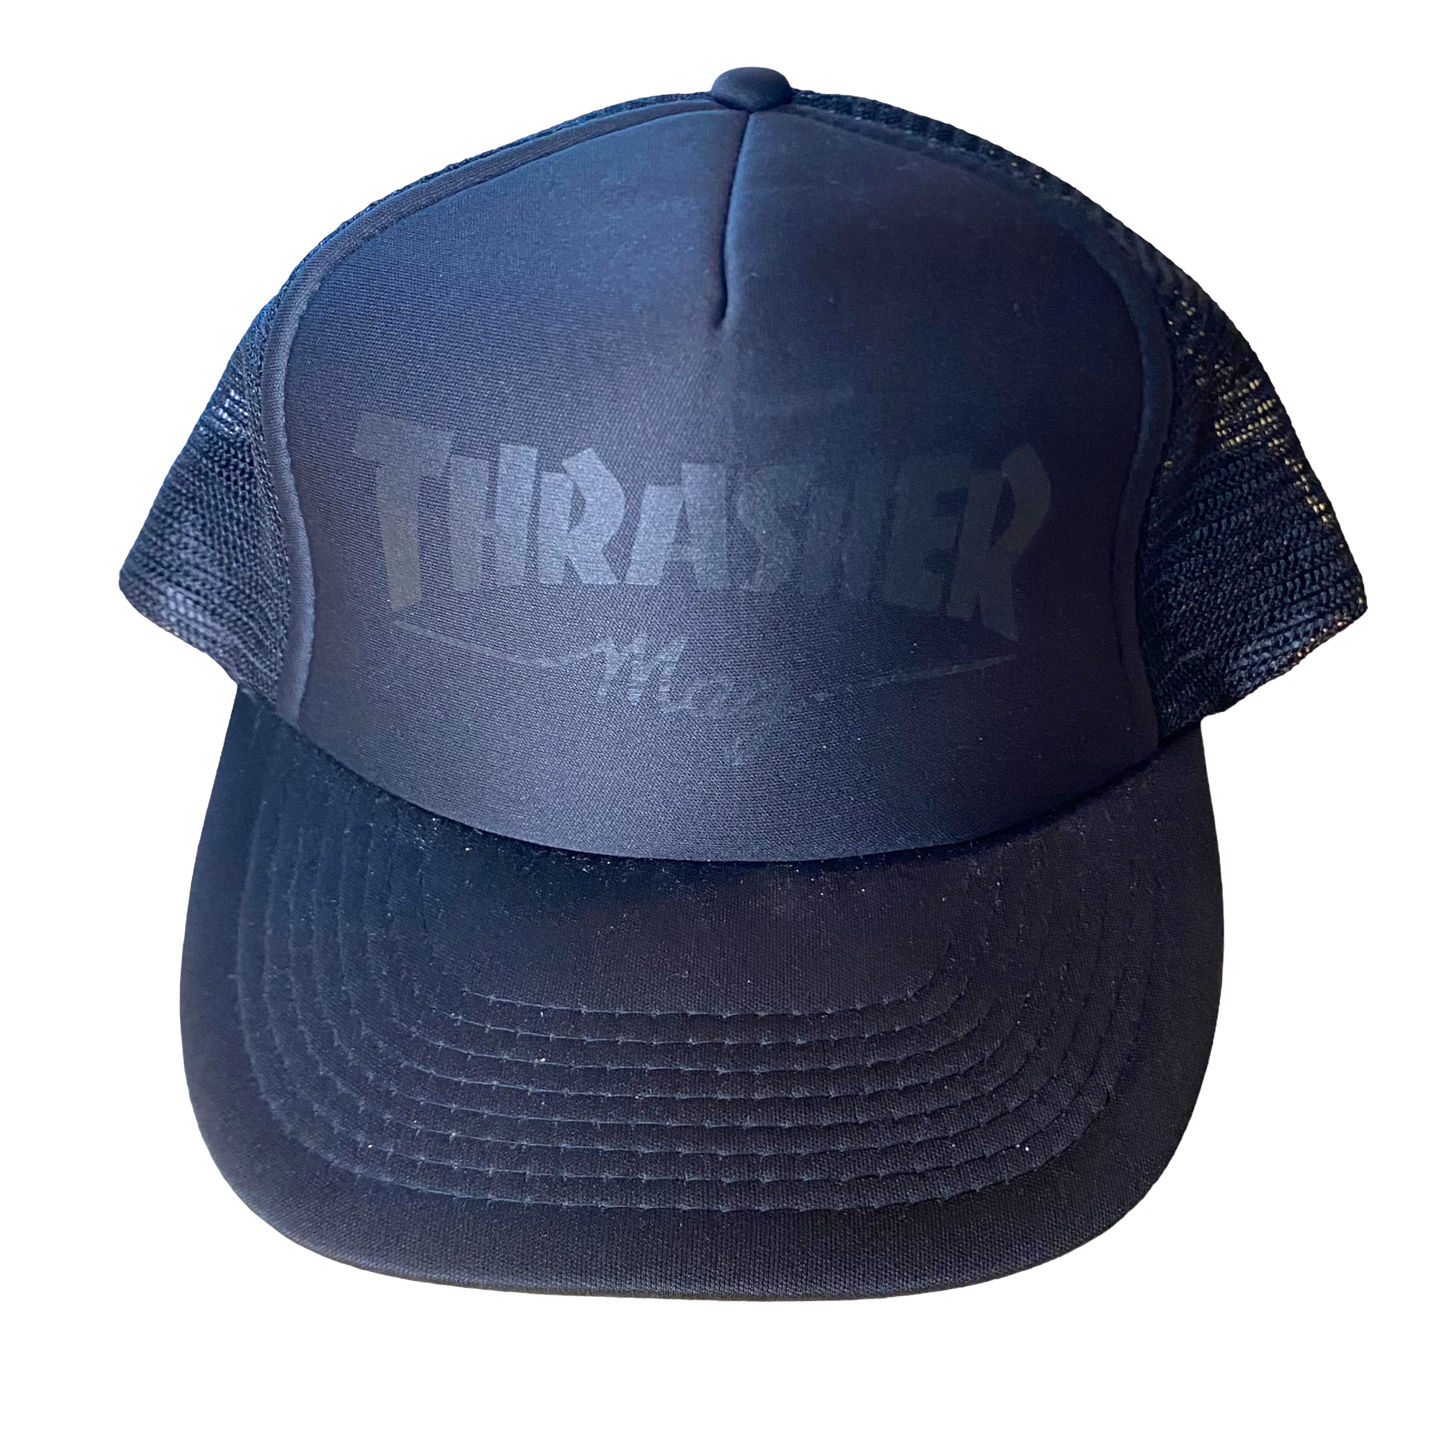 Thrasher - Black Trucker Snapback Hat